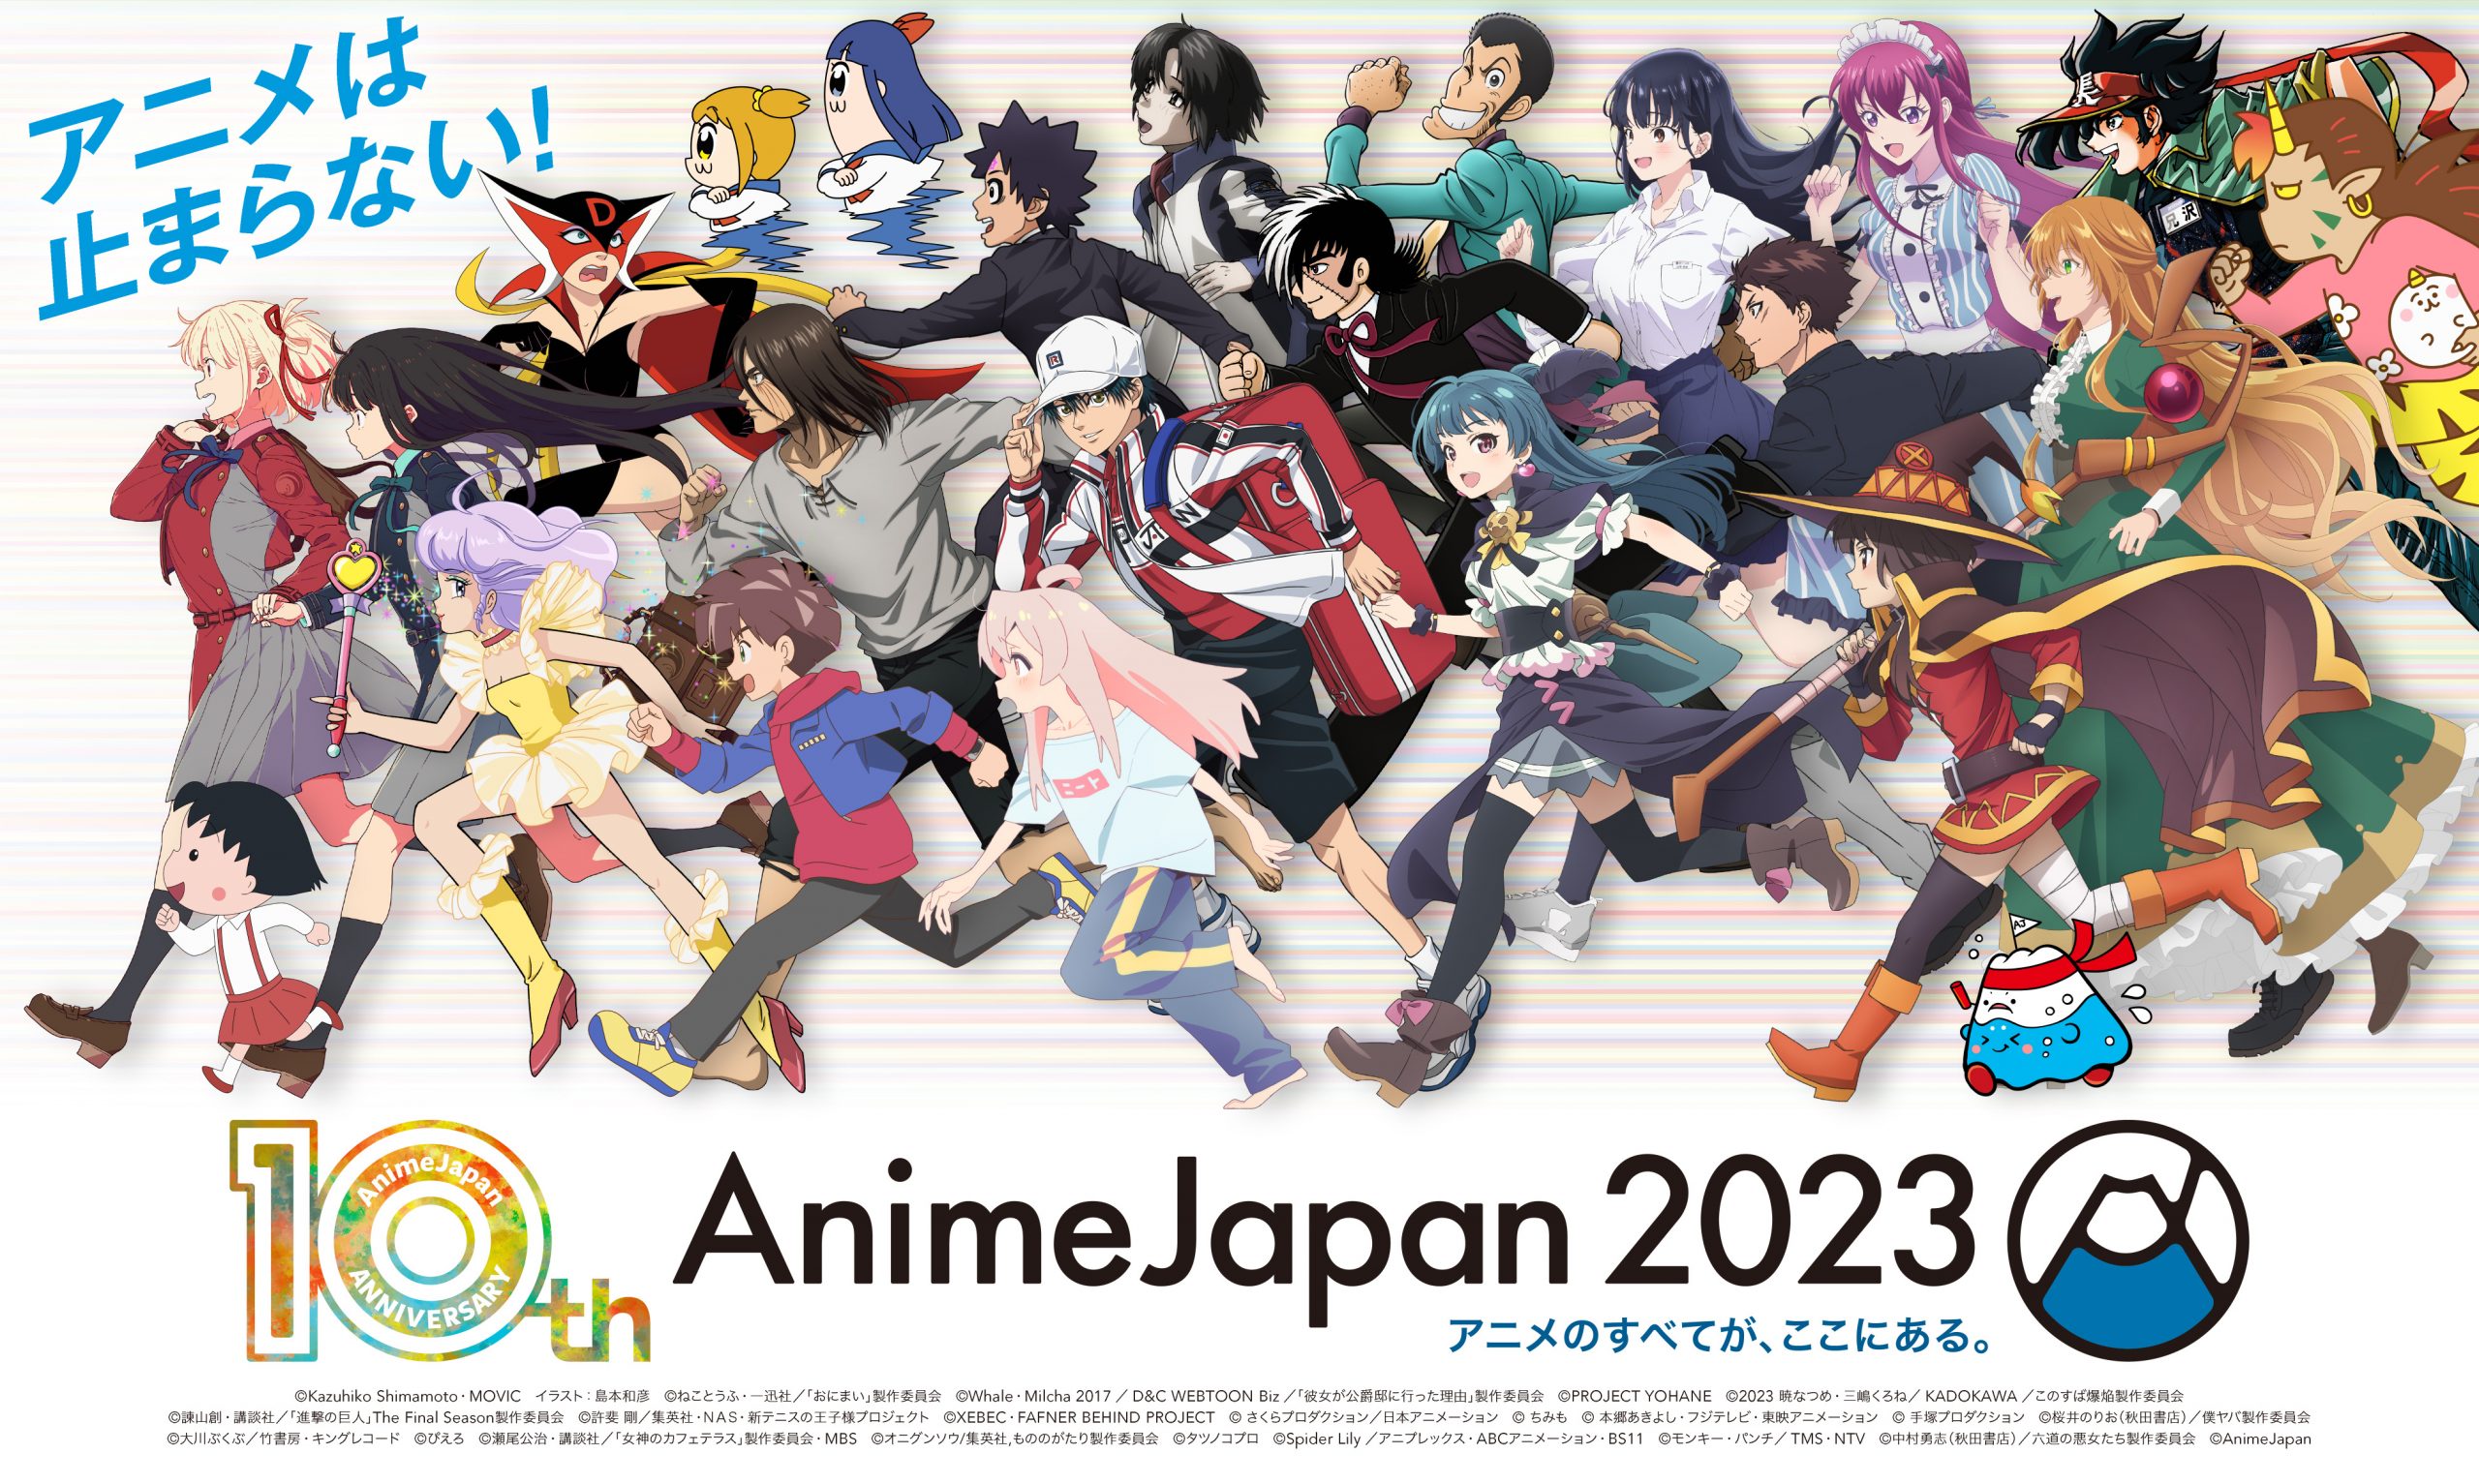 日本のアニメ総合データベース「アニメ大全」 ｜ 世界最大級のアニメイベント「AnimeJapan 2023」 全46ステージ情報を一挙解禁！ステージ応募権付入場券は2月23日まで販売